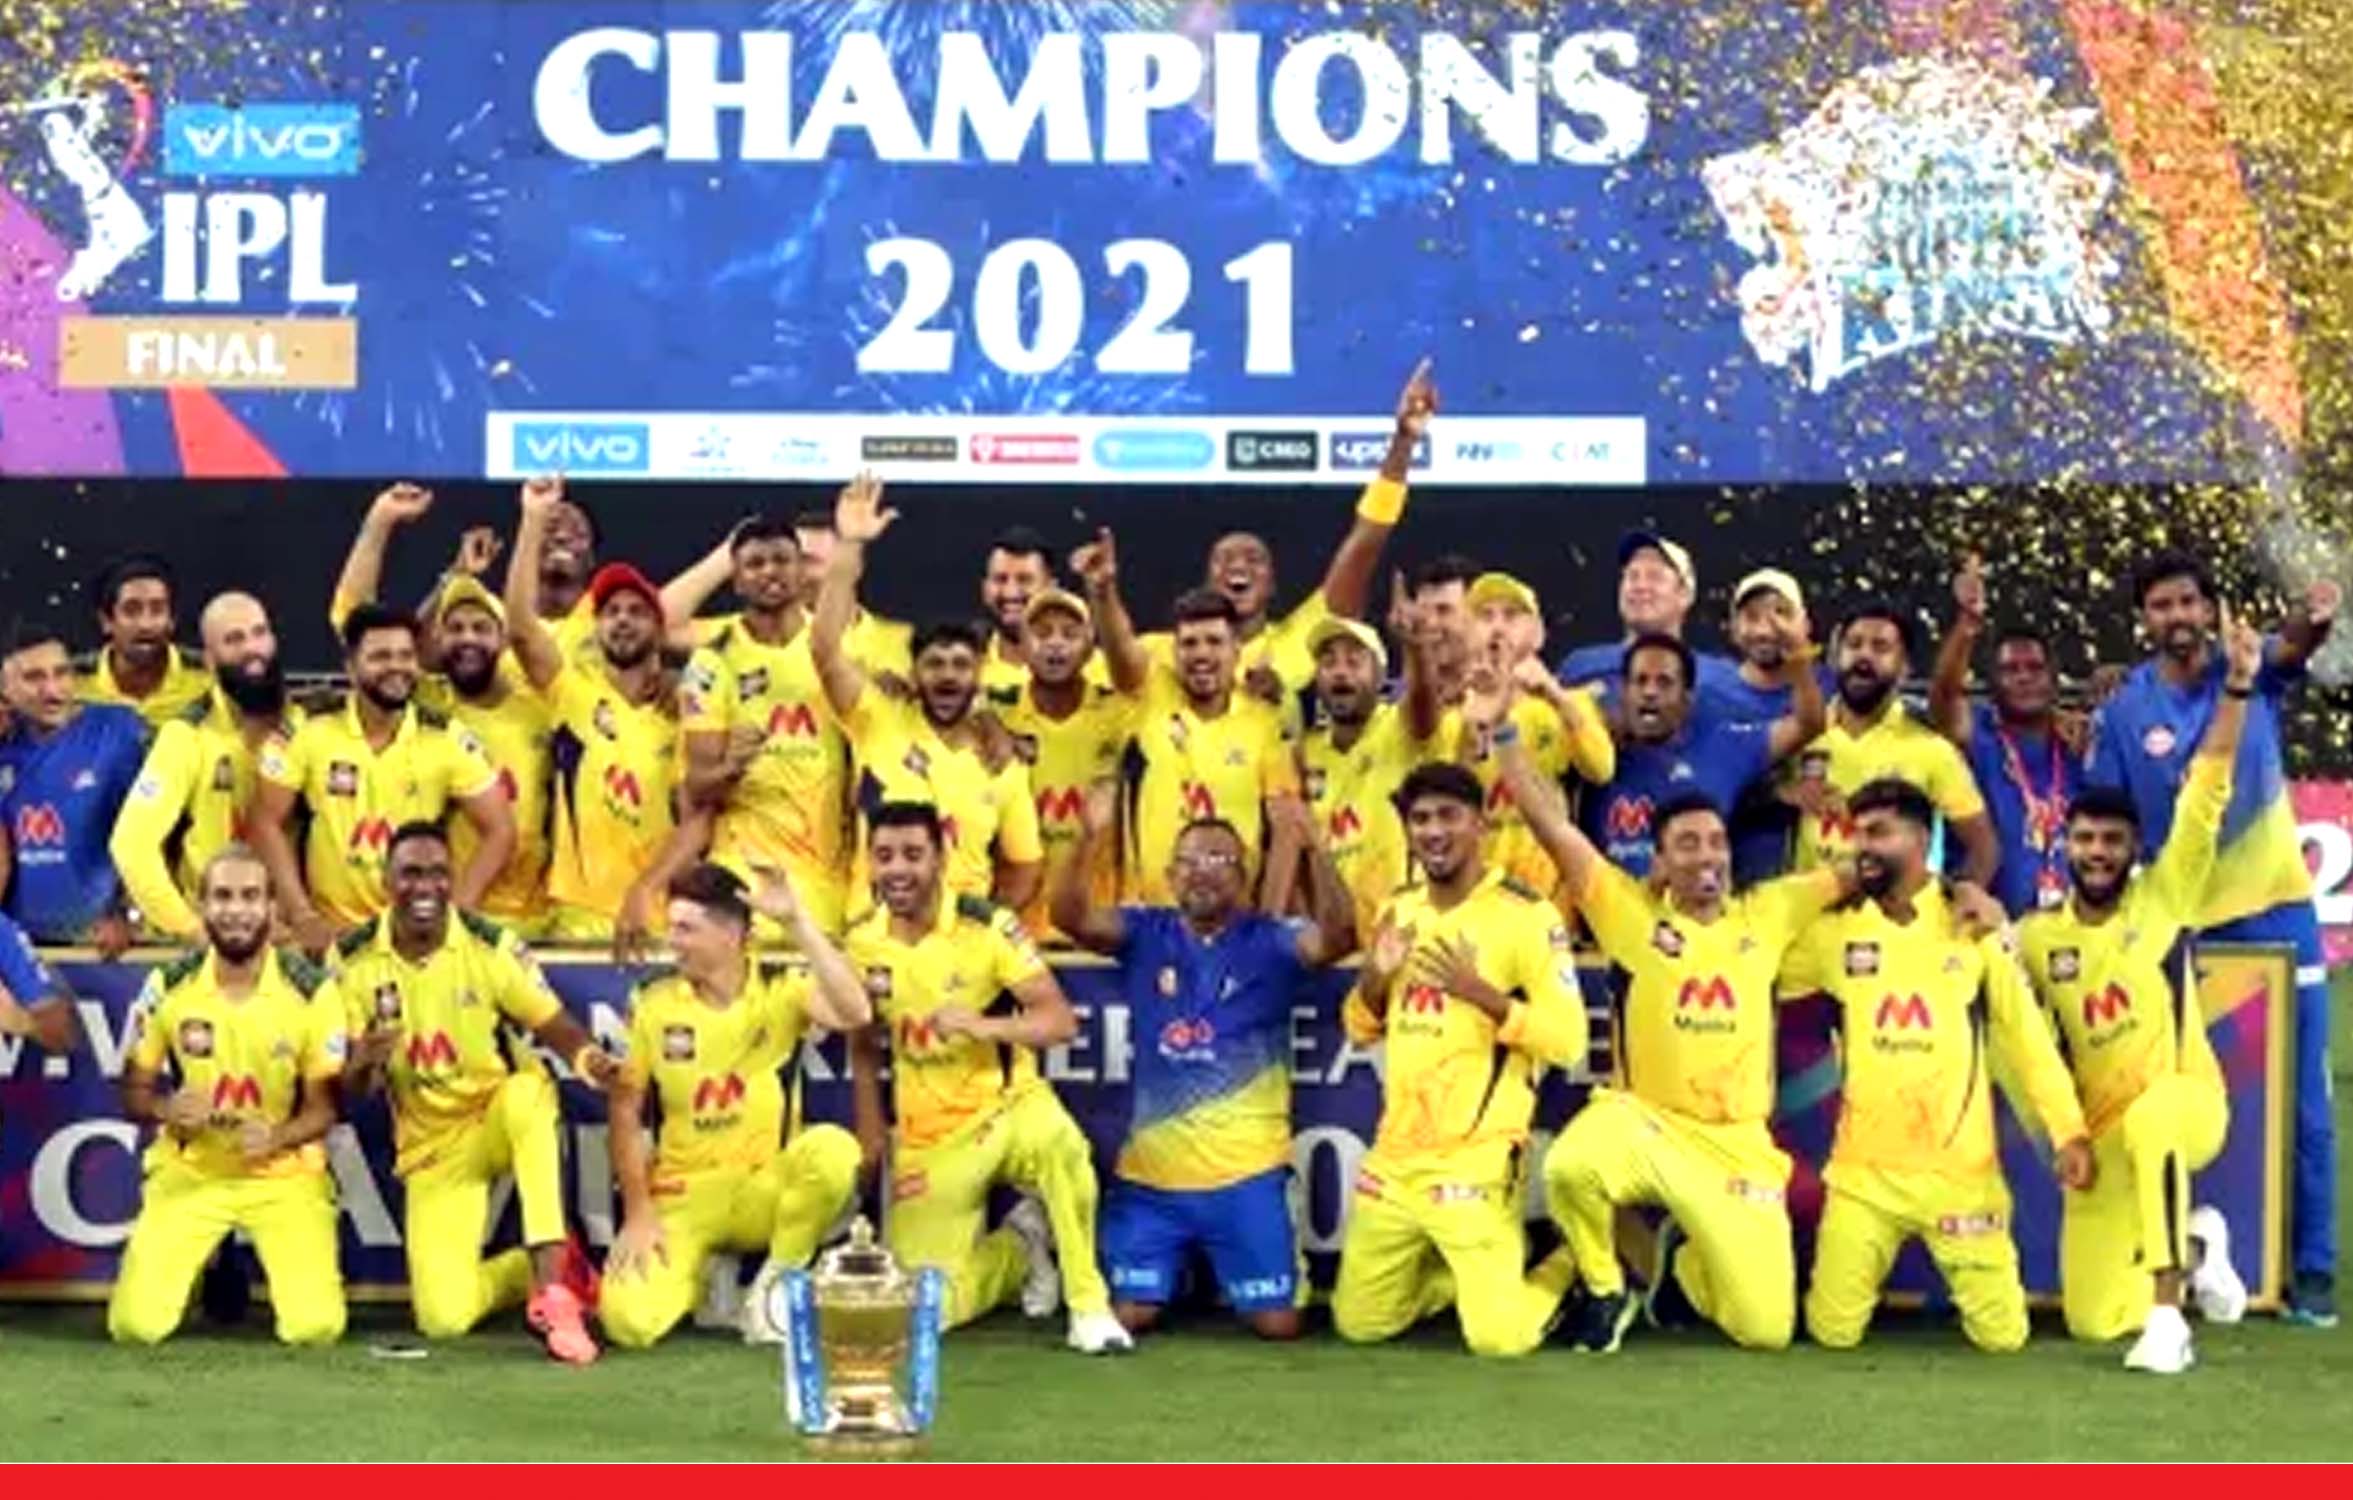 कोलकाता को 27 रनों से हराकर चेन्नई सुपर किंग्स ने चौथी बार IPL खिताब जीता